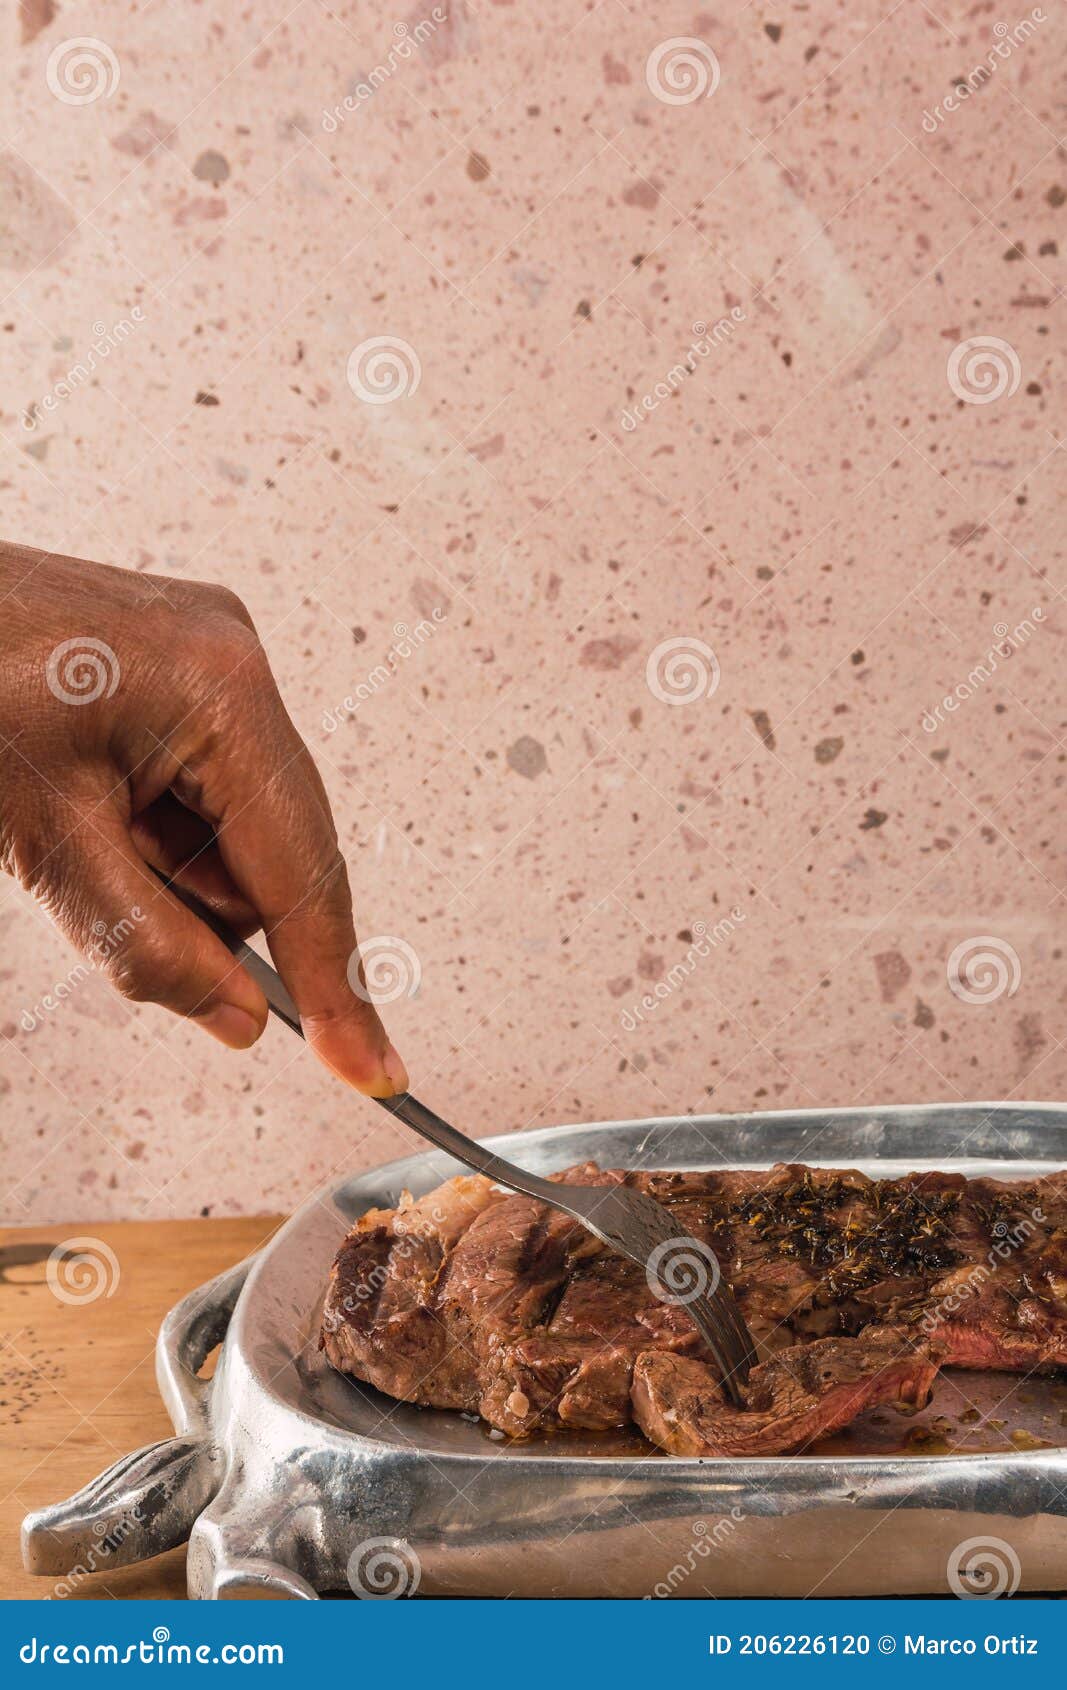 cut of meat `aguja norteÃÂ±a sonora`, served on a silver plate in the  of a cow 4